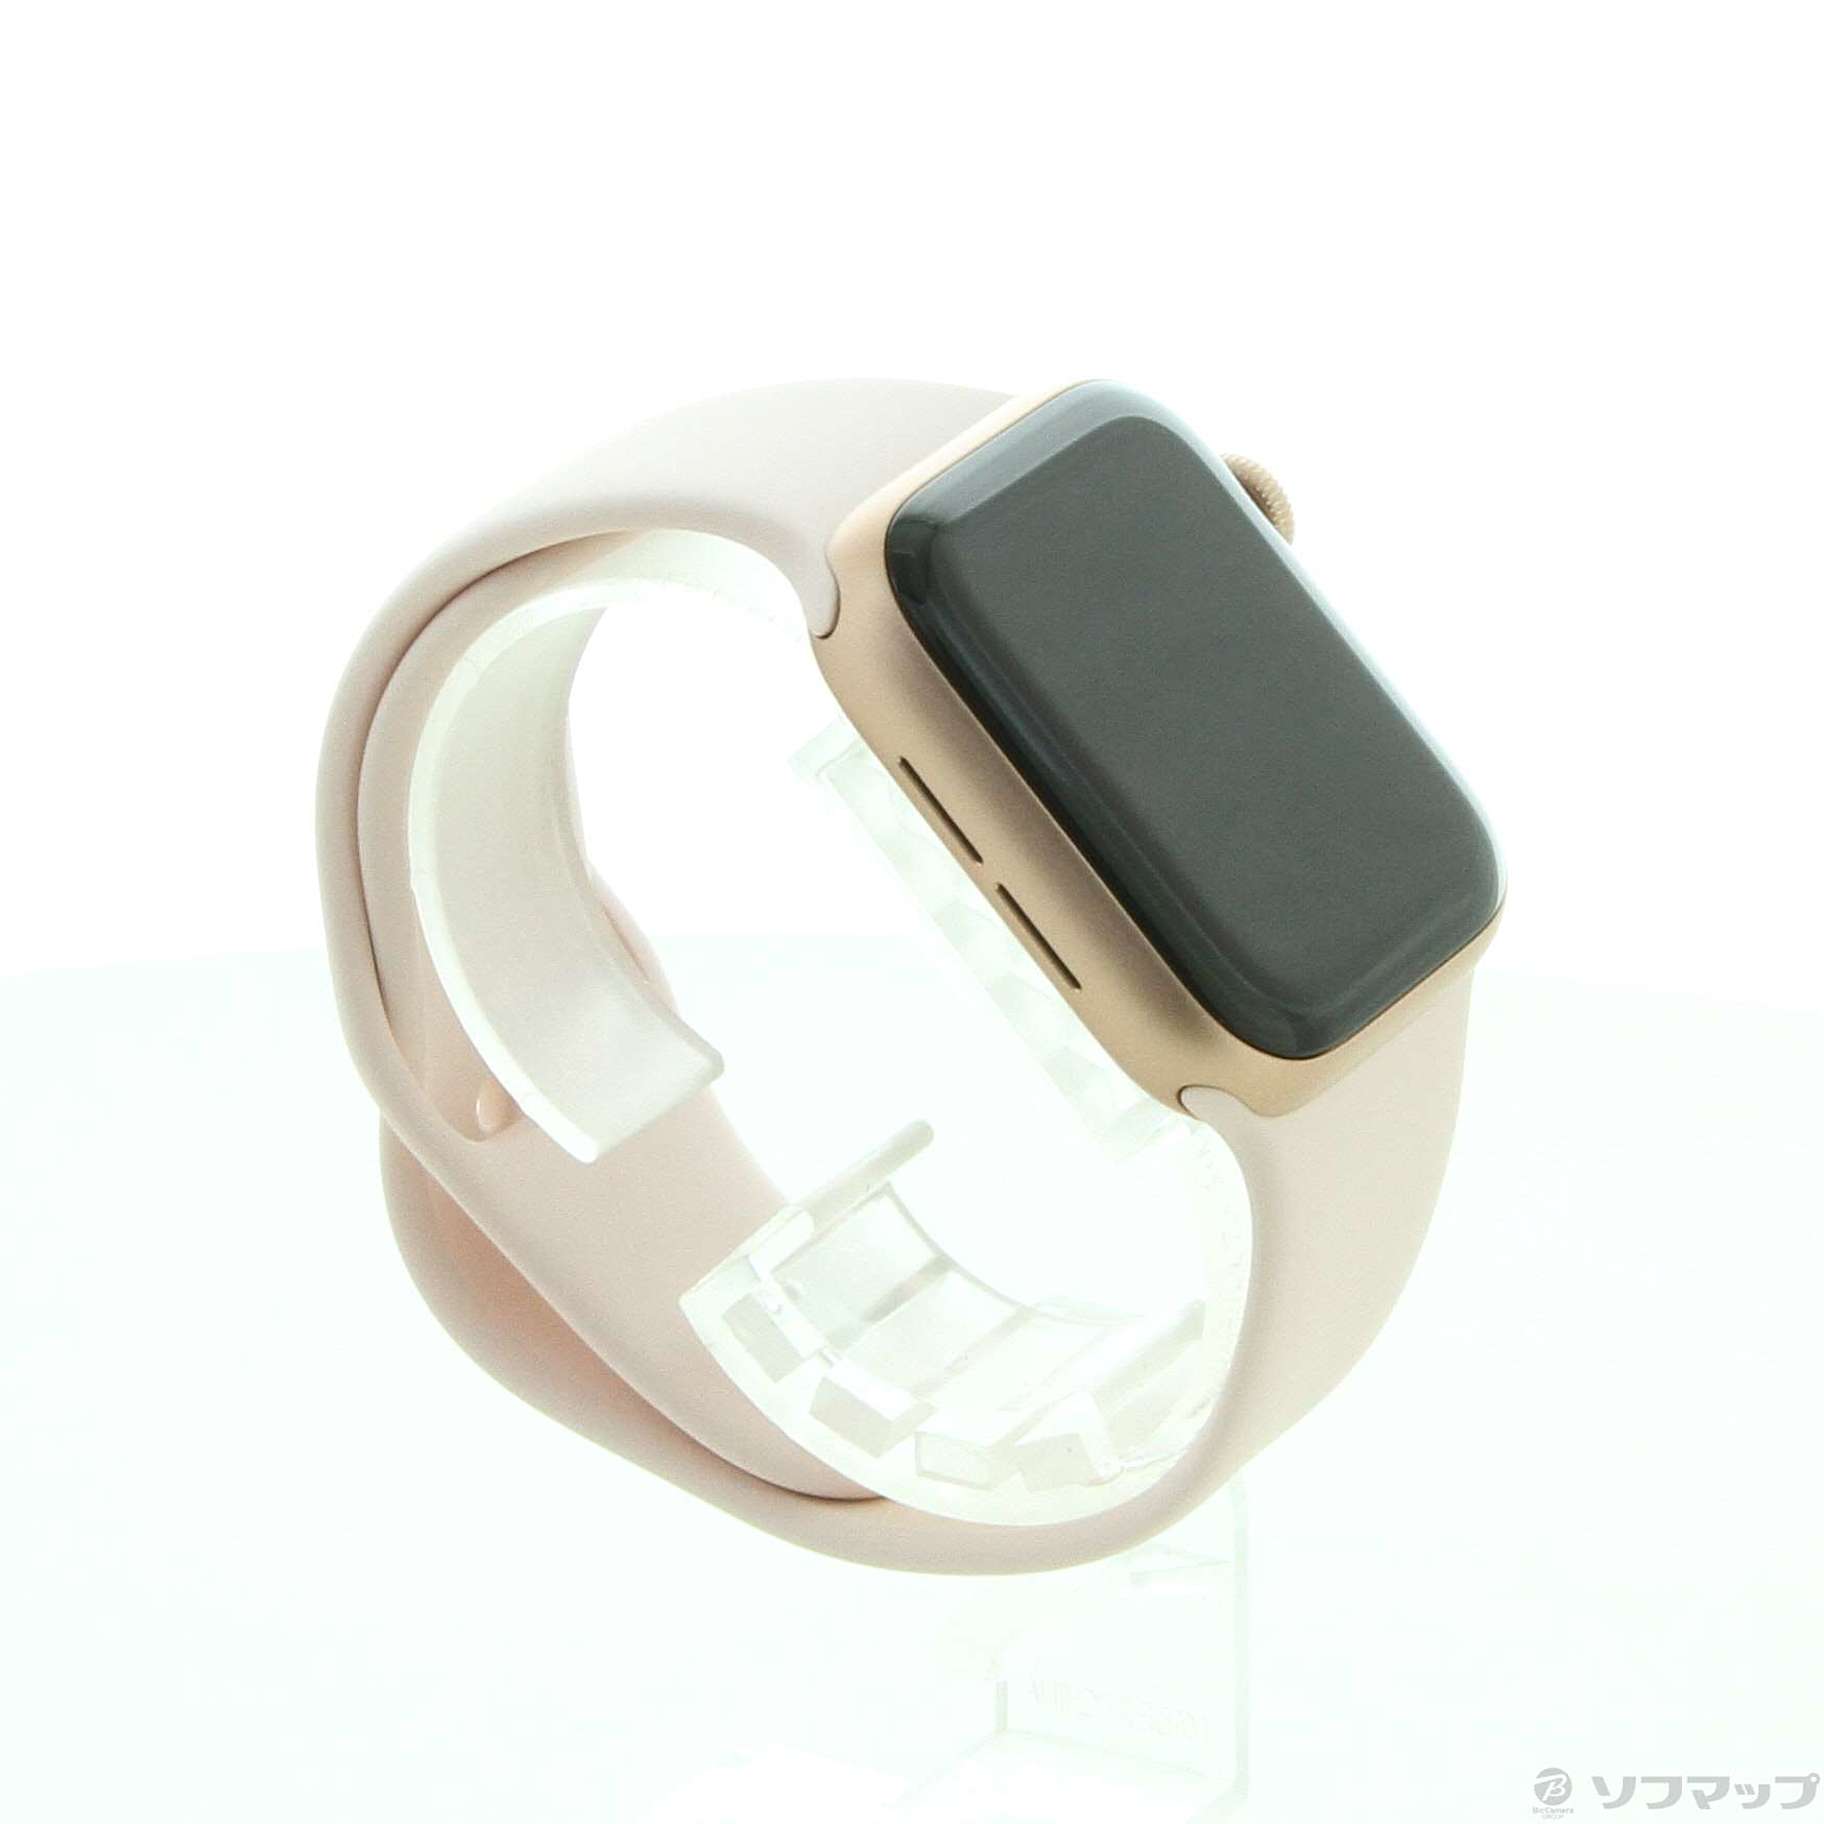 〔展示品〕 Apple Watch SE GPS + Cellular 40mm ゴールドアルミニウムケース ピンクサンドスポーツバンド